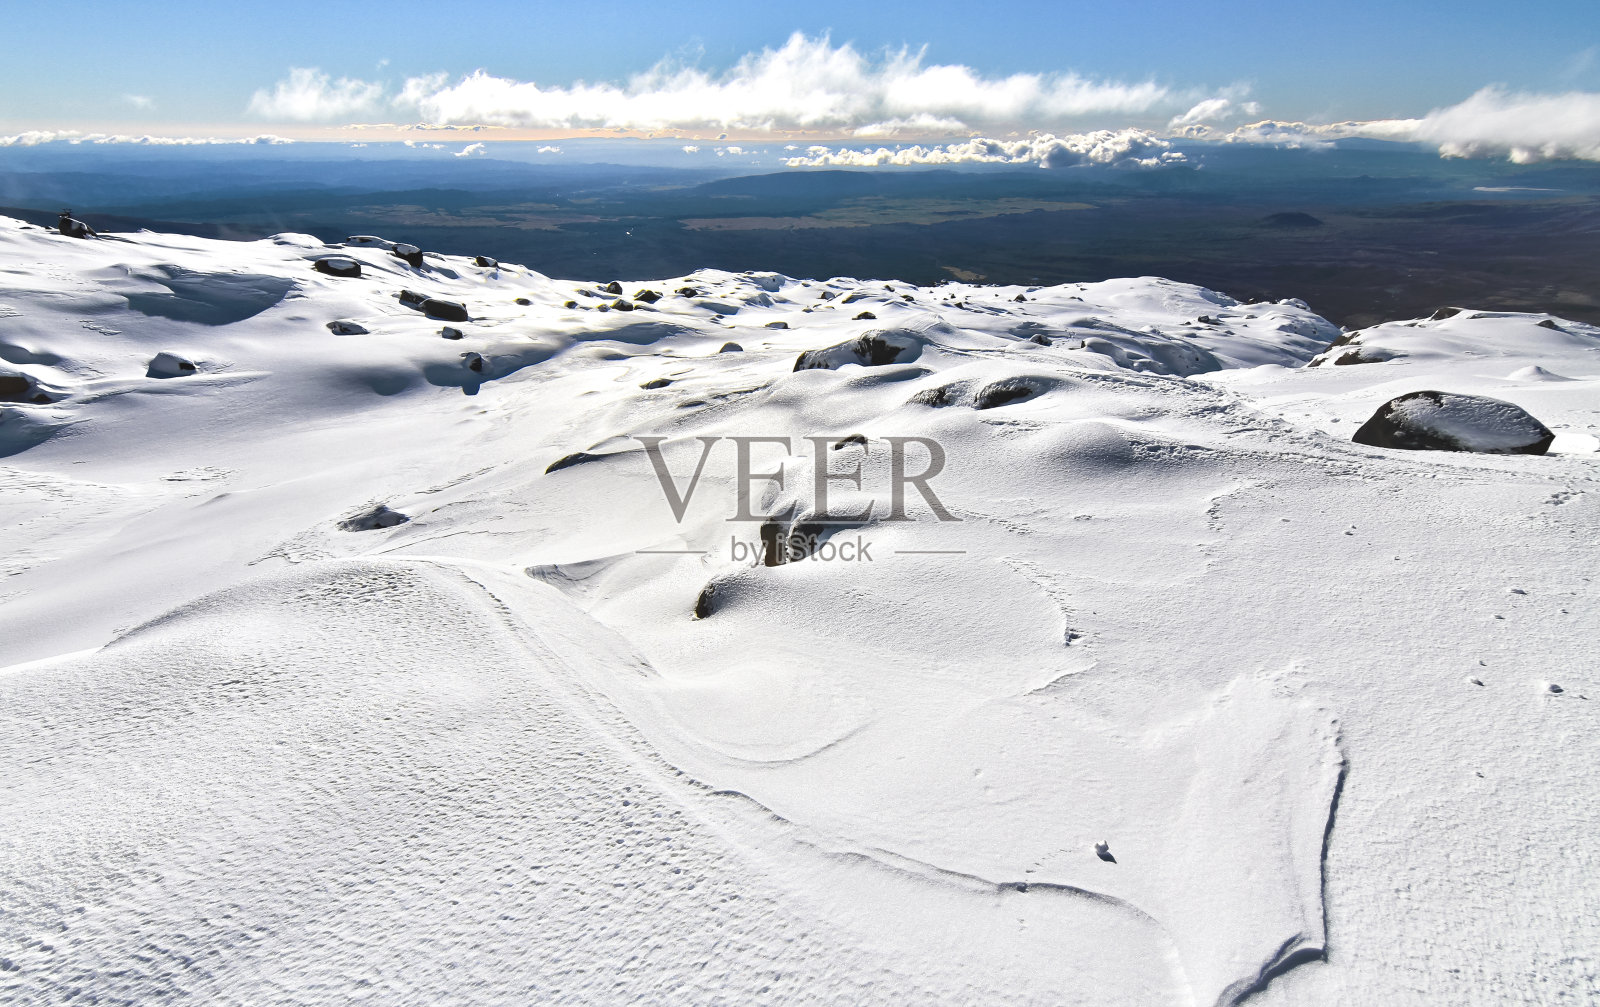 新西兰鲁阿佩胡山顶附近的雪原照片摄影图片